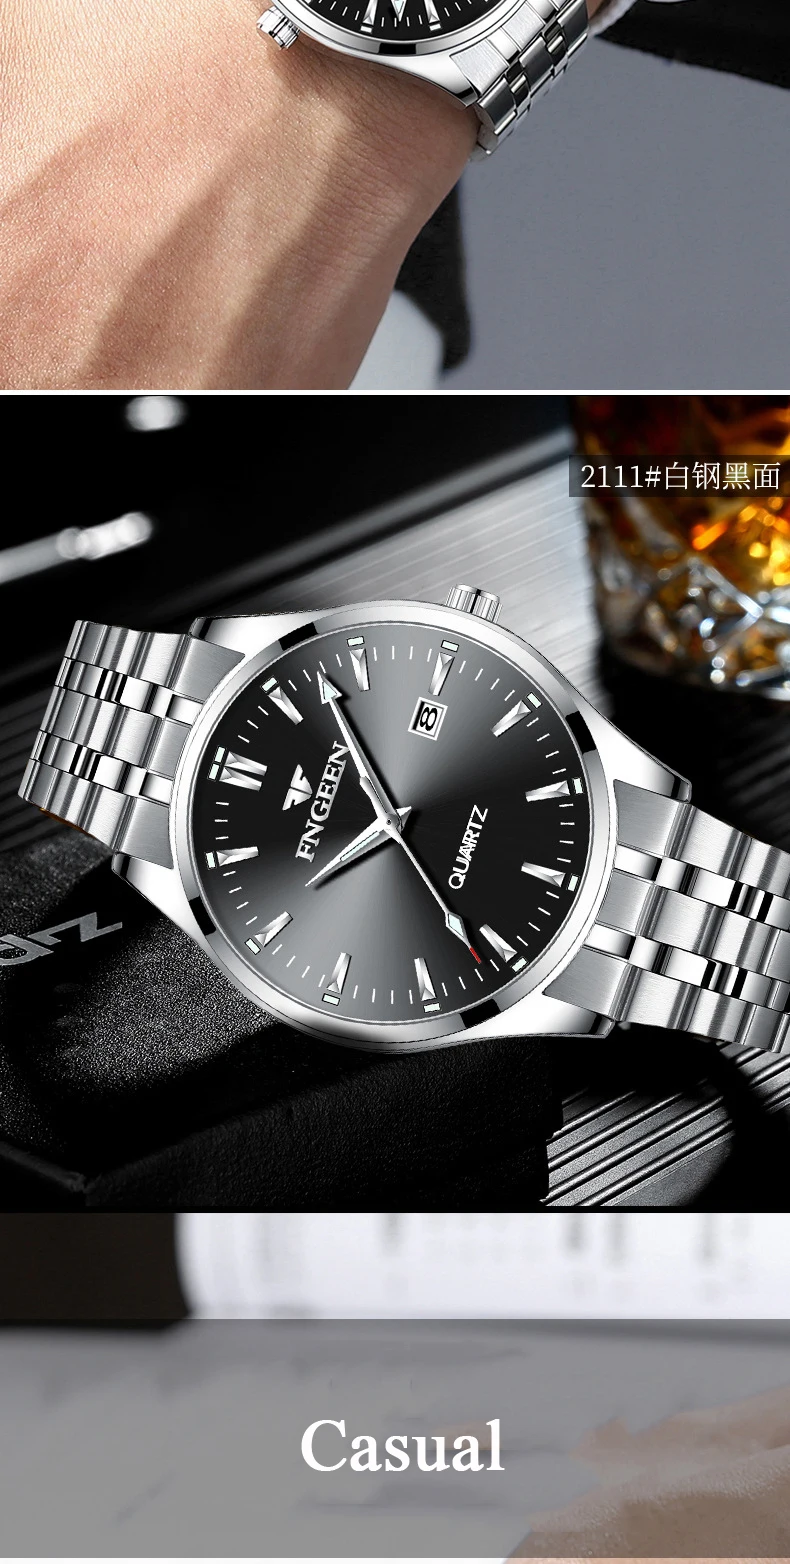 Relogio Masculino мужские часы Топ бренд Роскошные модные кварцевые часы мужские часы спортивные деловые наручные часы Прямая поставка